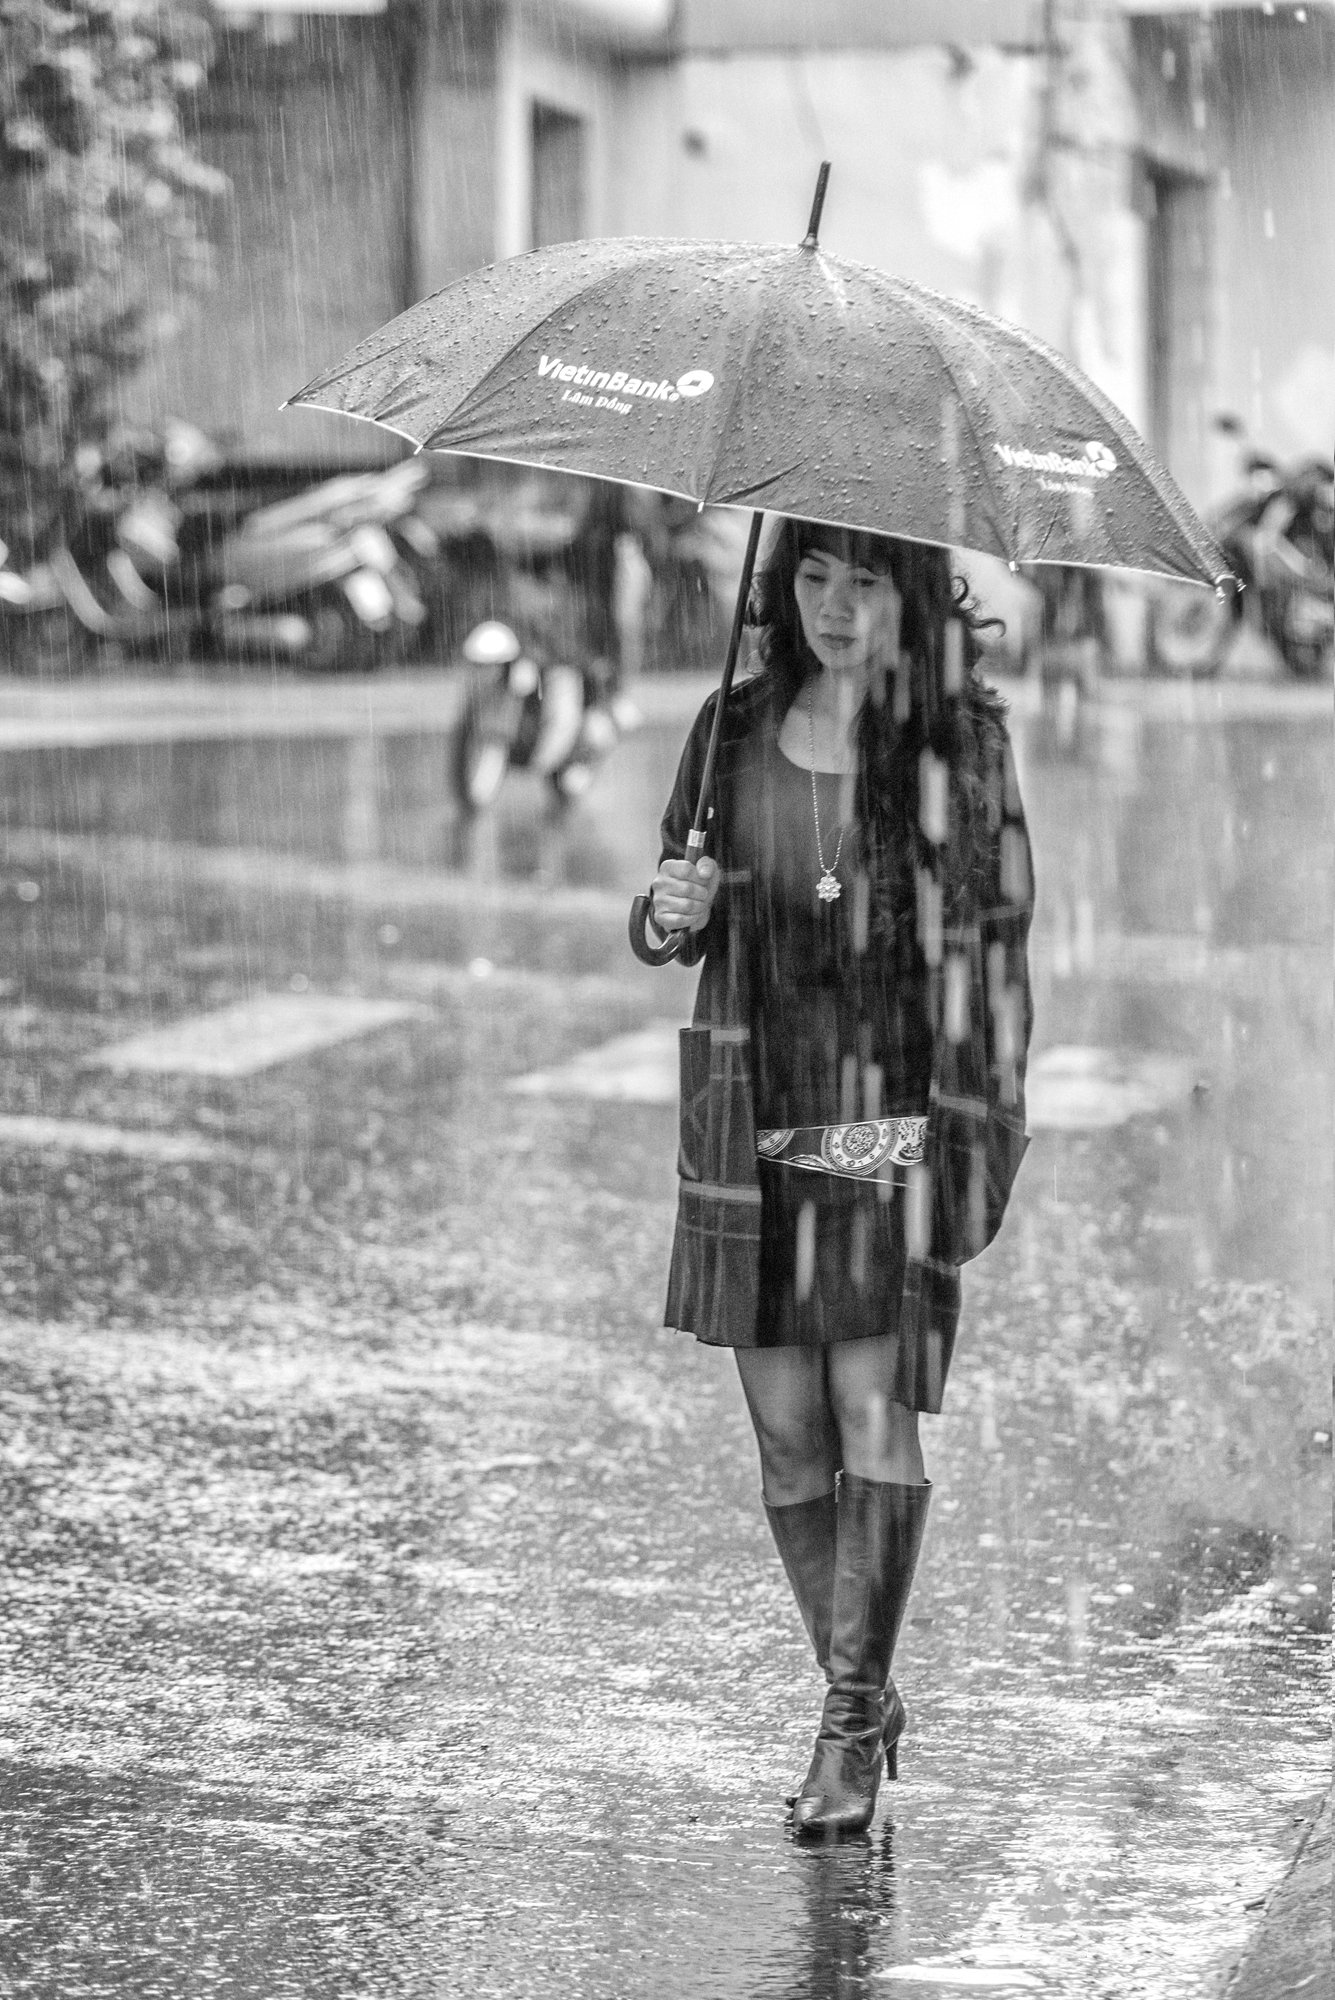 rain afternoon, Viet Dalat Hoang